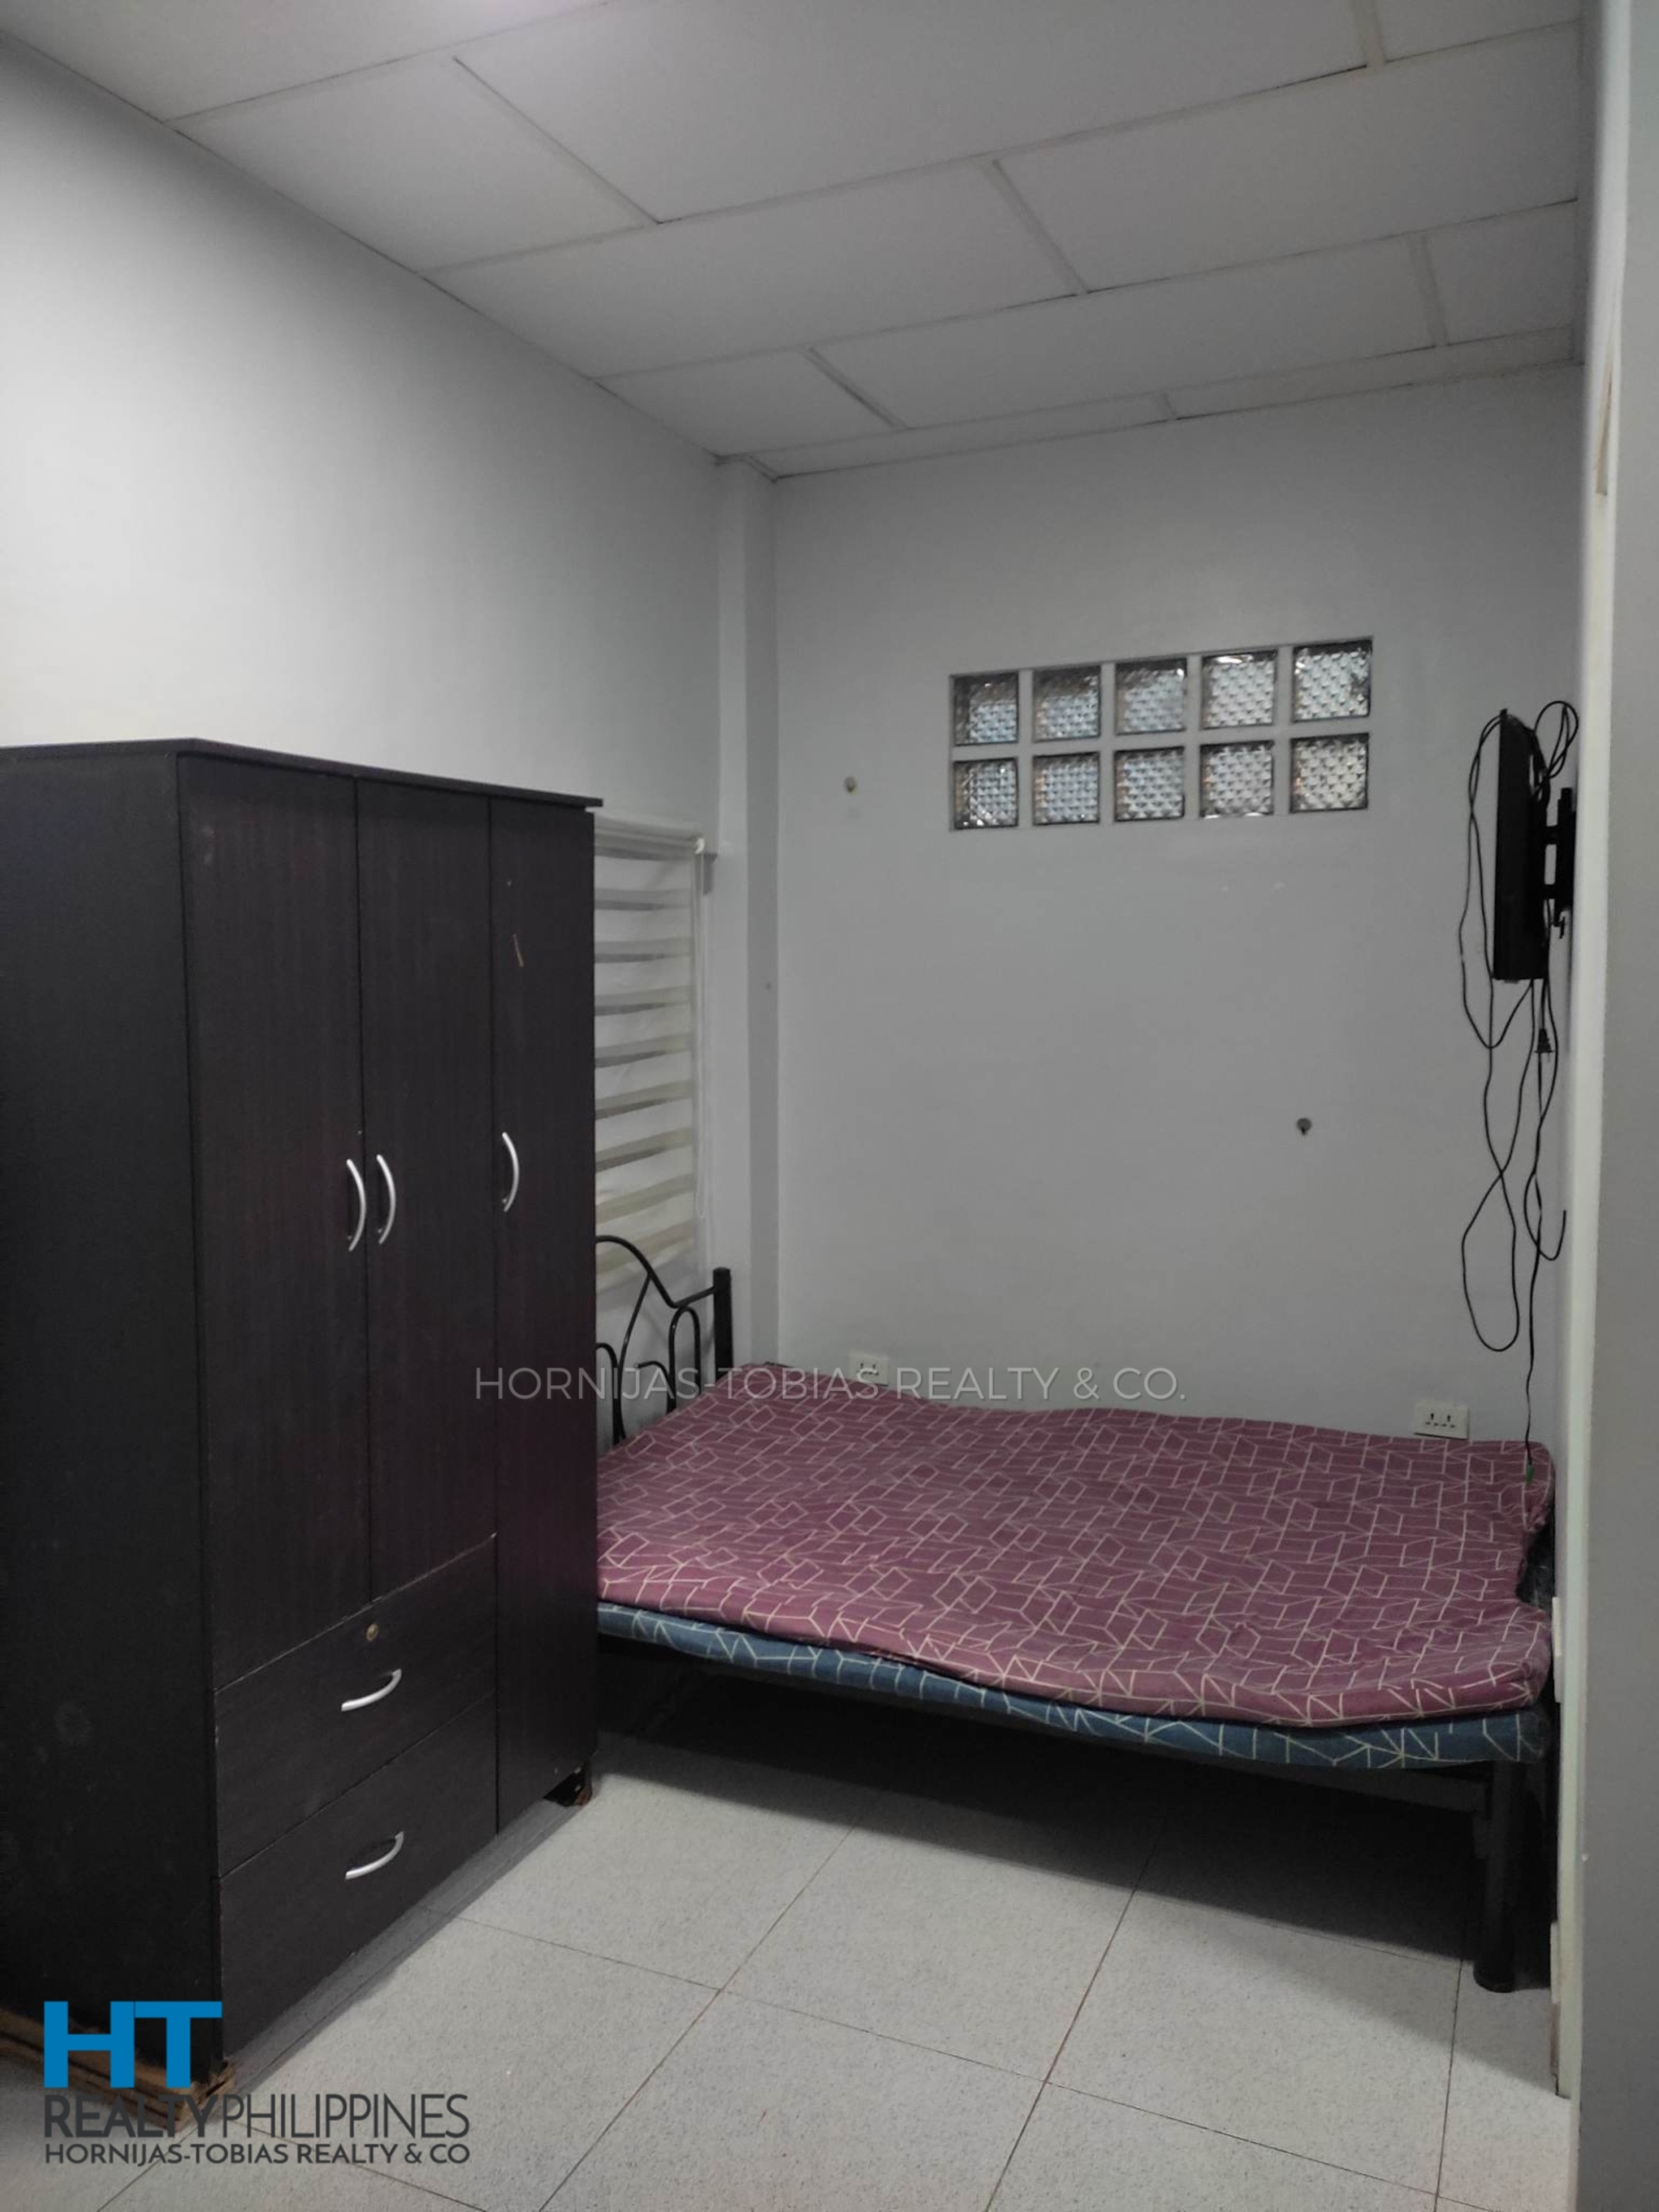 bedroom - 12-door 4-floor income-generating apartment building for sale in Buhangin, Davao City